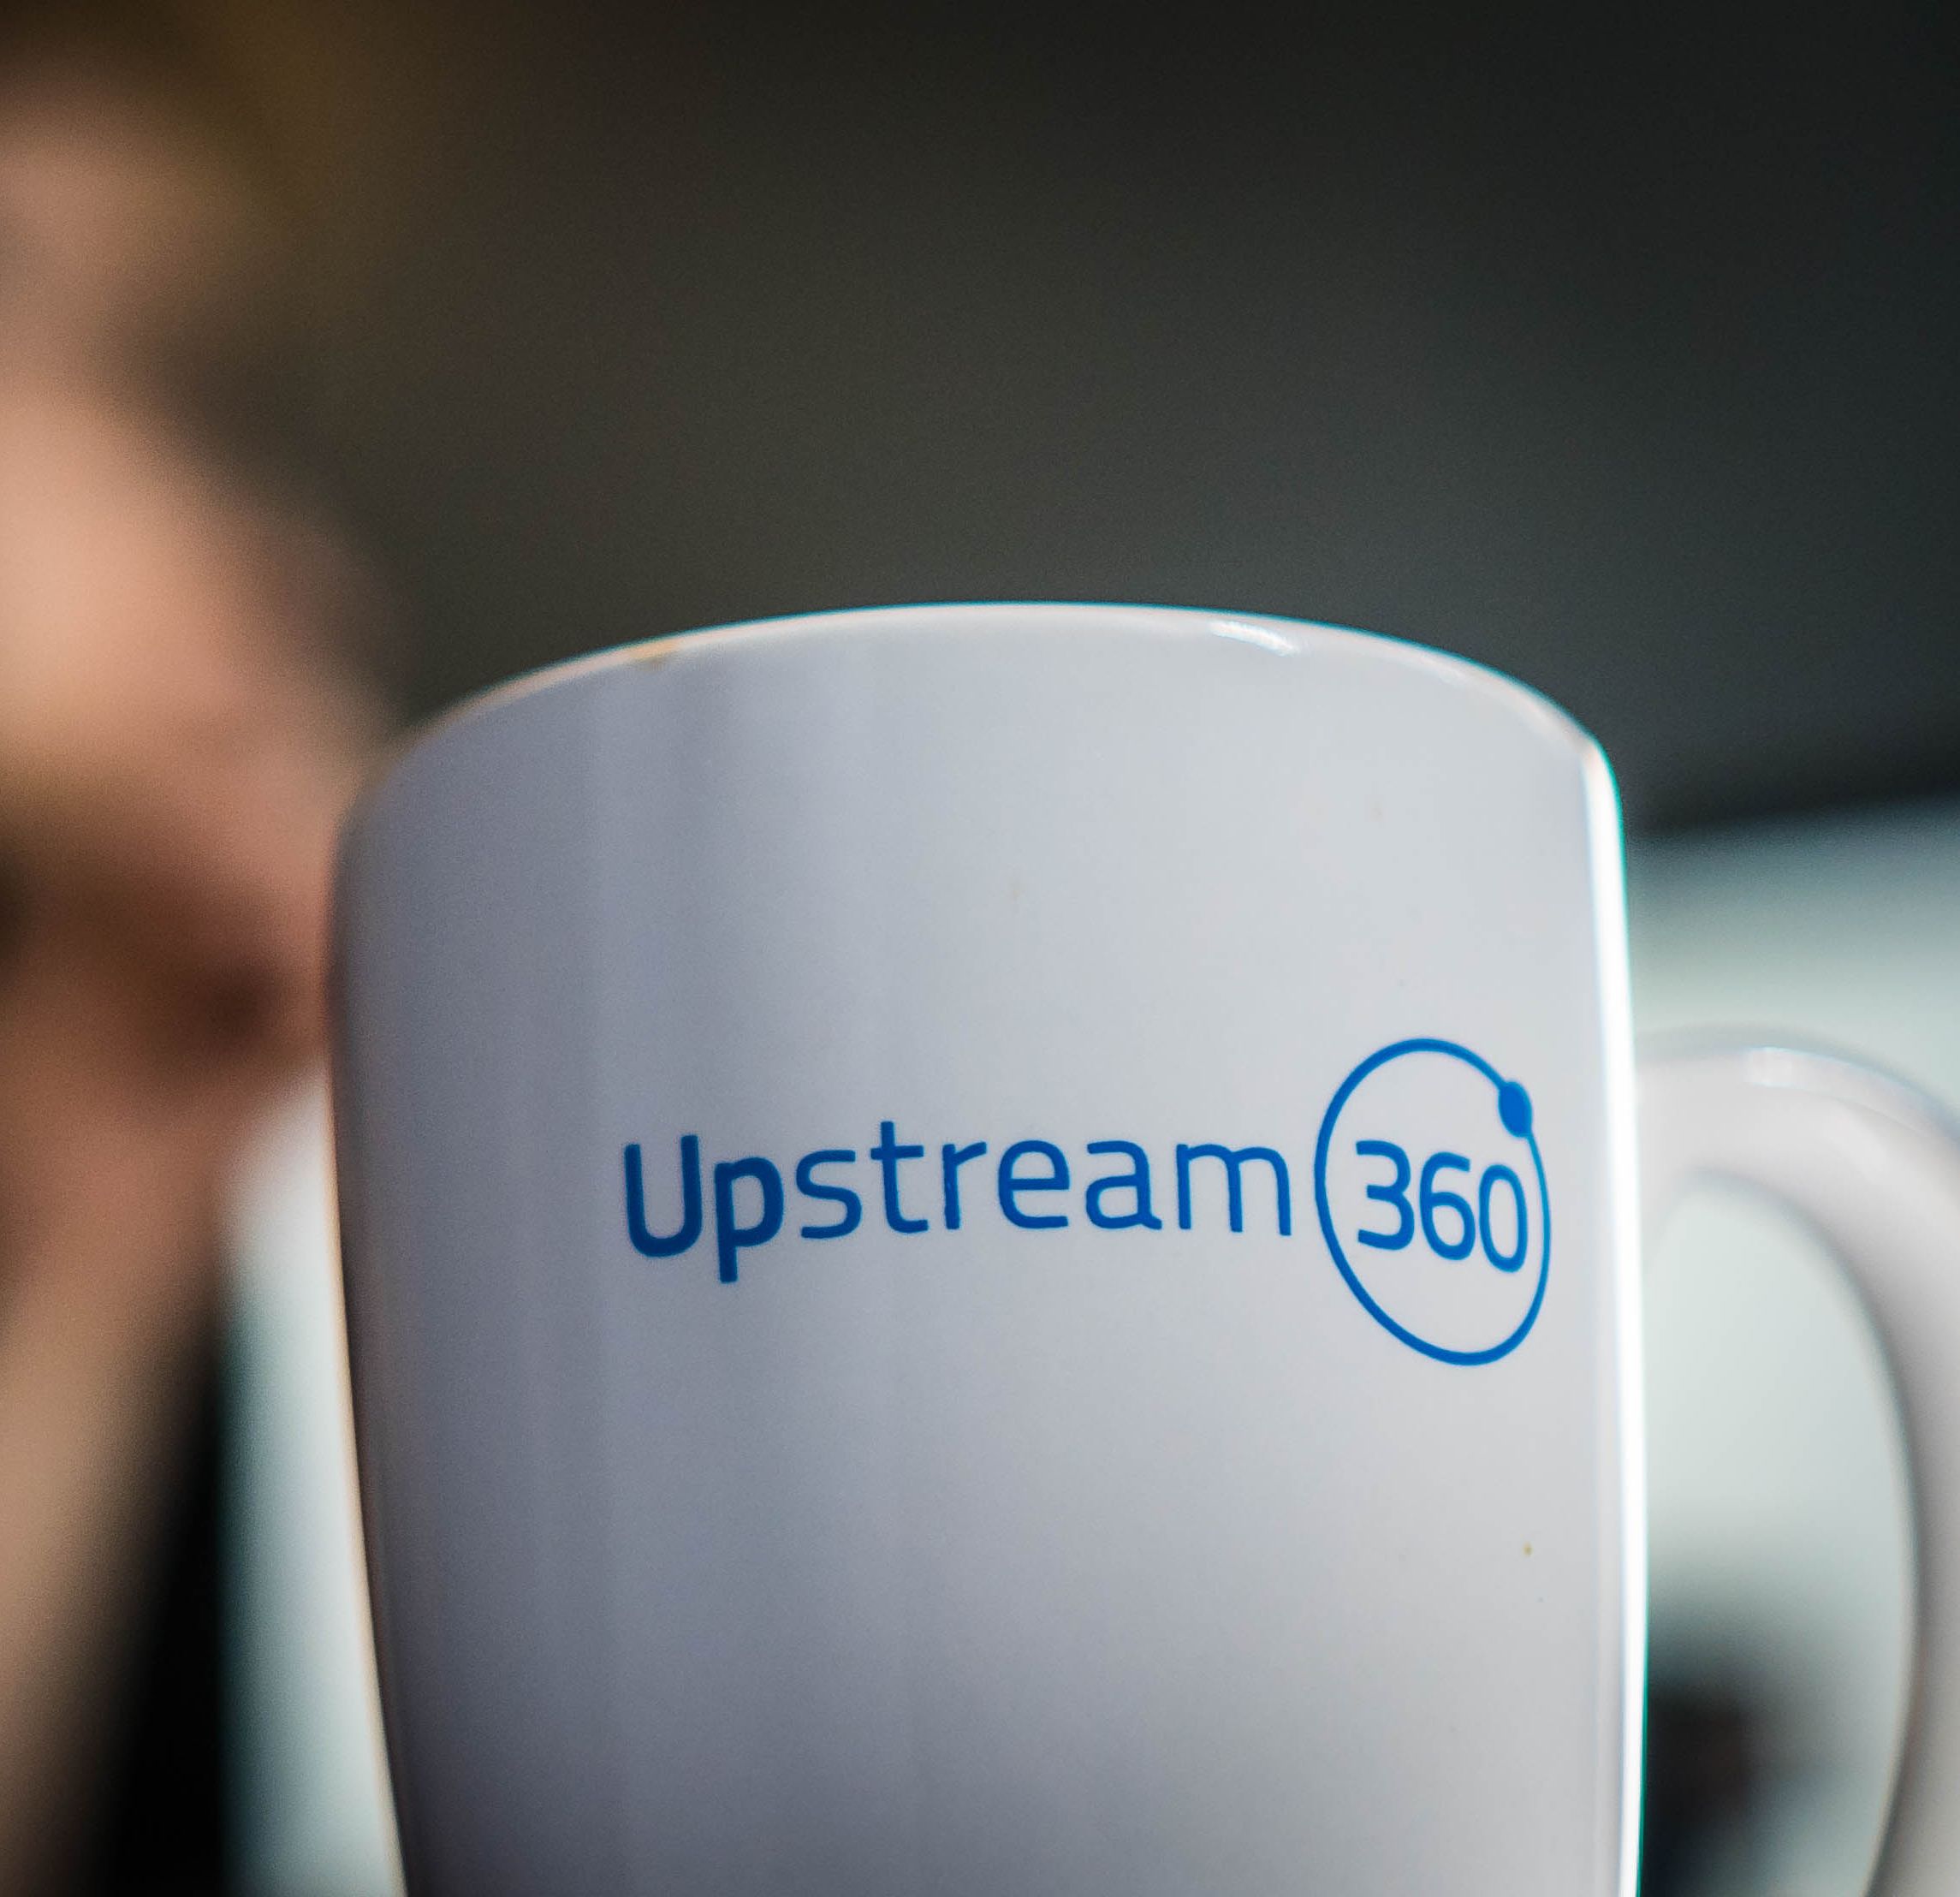 upstream360